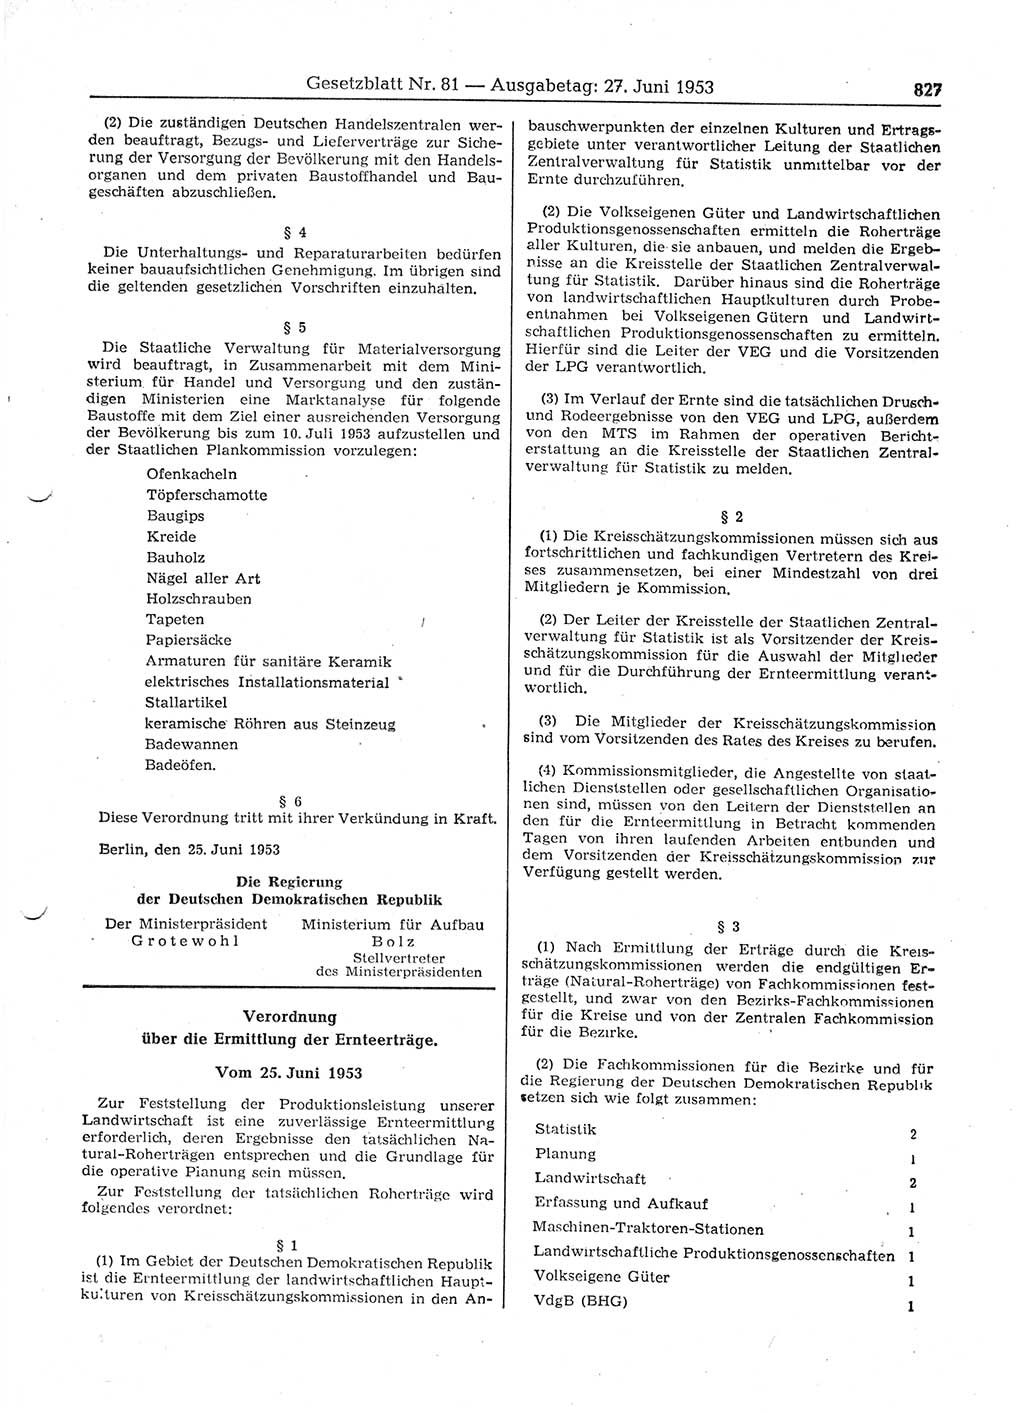 Gesetzblatt (GBl.) der Deutschen Demokratischen Republik (DDR) 1953, Seite 827 (GBl. DDR 1953, S. 827)